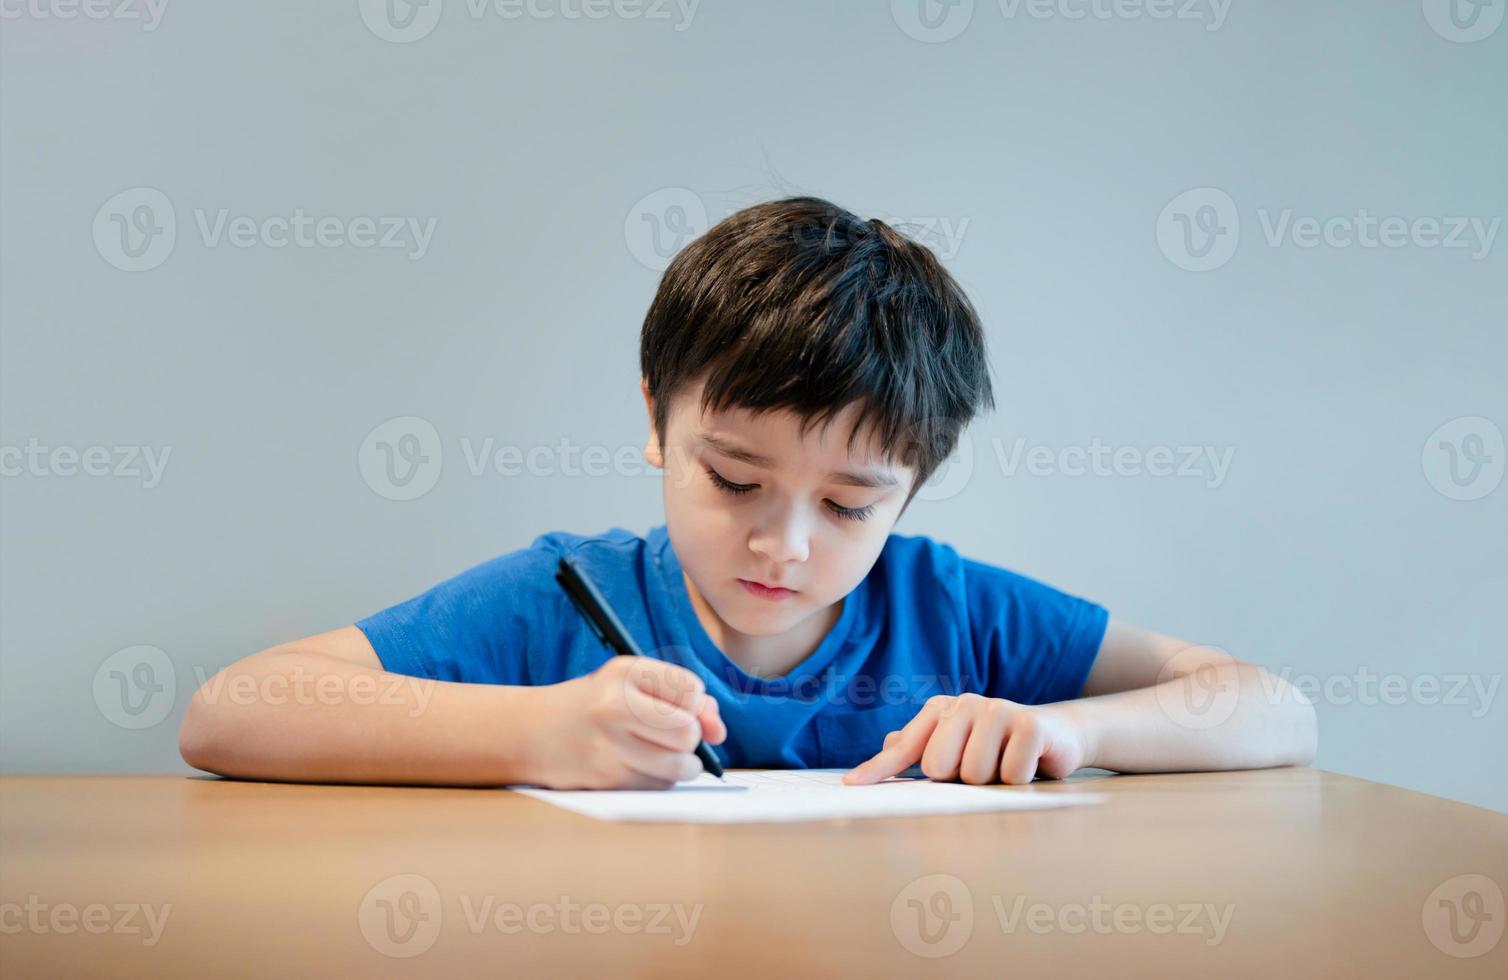 skolbarn som använder svart pennteckning eller skriver brevet på papper, ung pojke gör läxor, barn med penna skriver anteckningar i pappersark under lektionen. söt elev gör test, hemundervisningskoncept foto